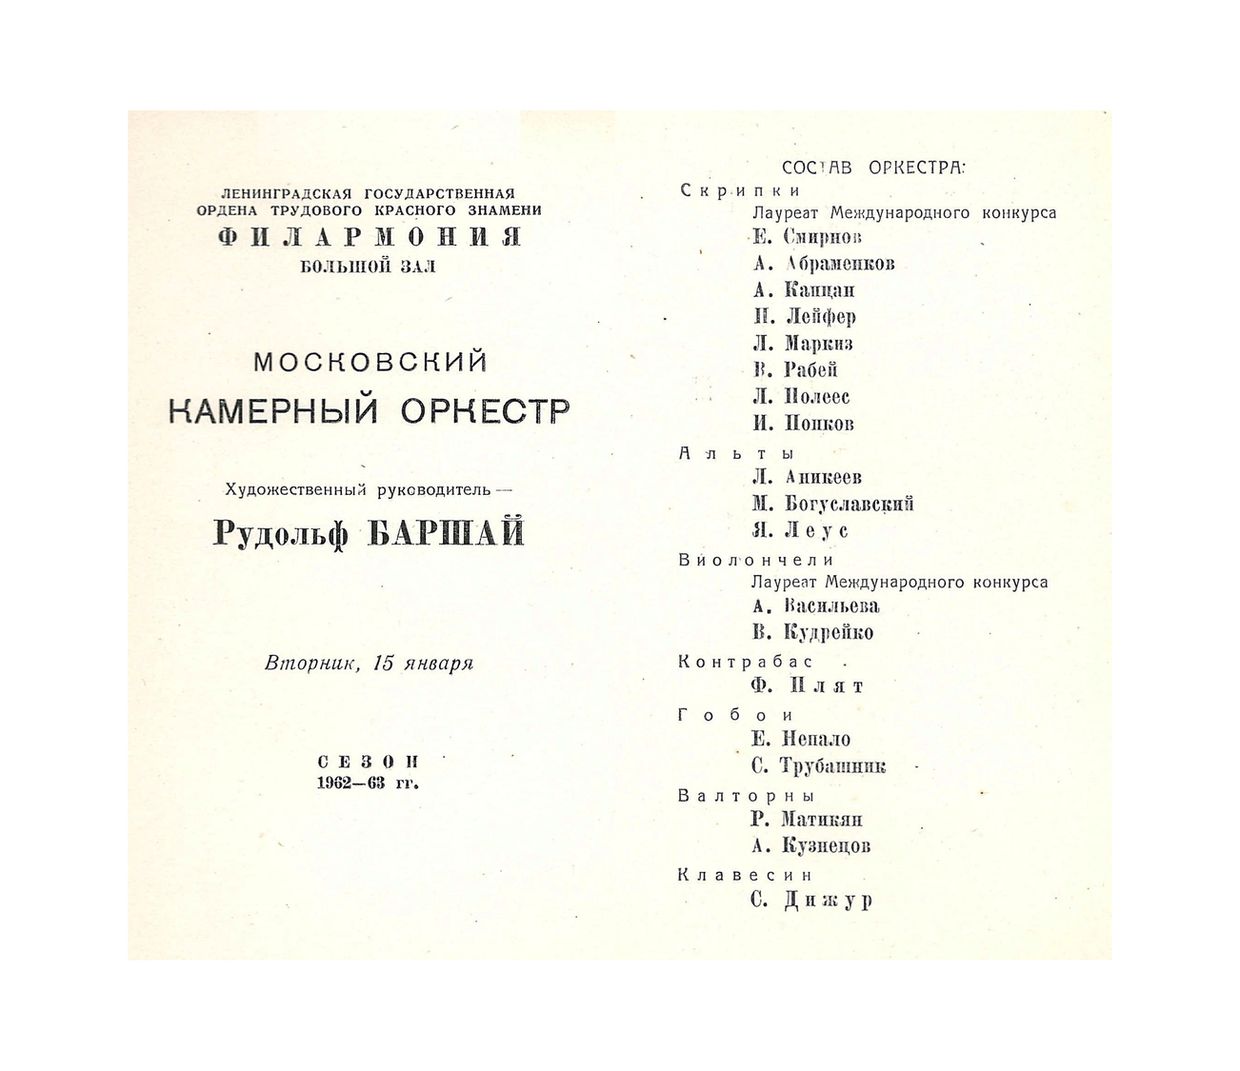 Вечер старинной и современной музыки
Московский камерный оркестр под управлением Р. Баршая